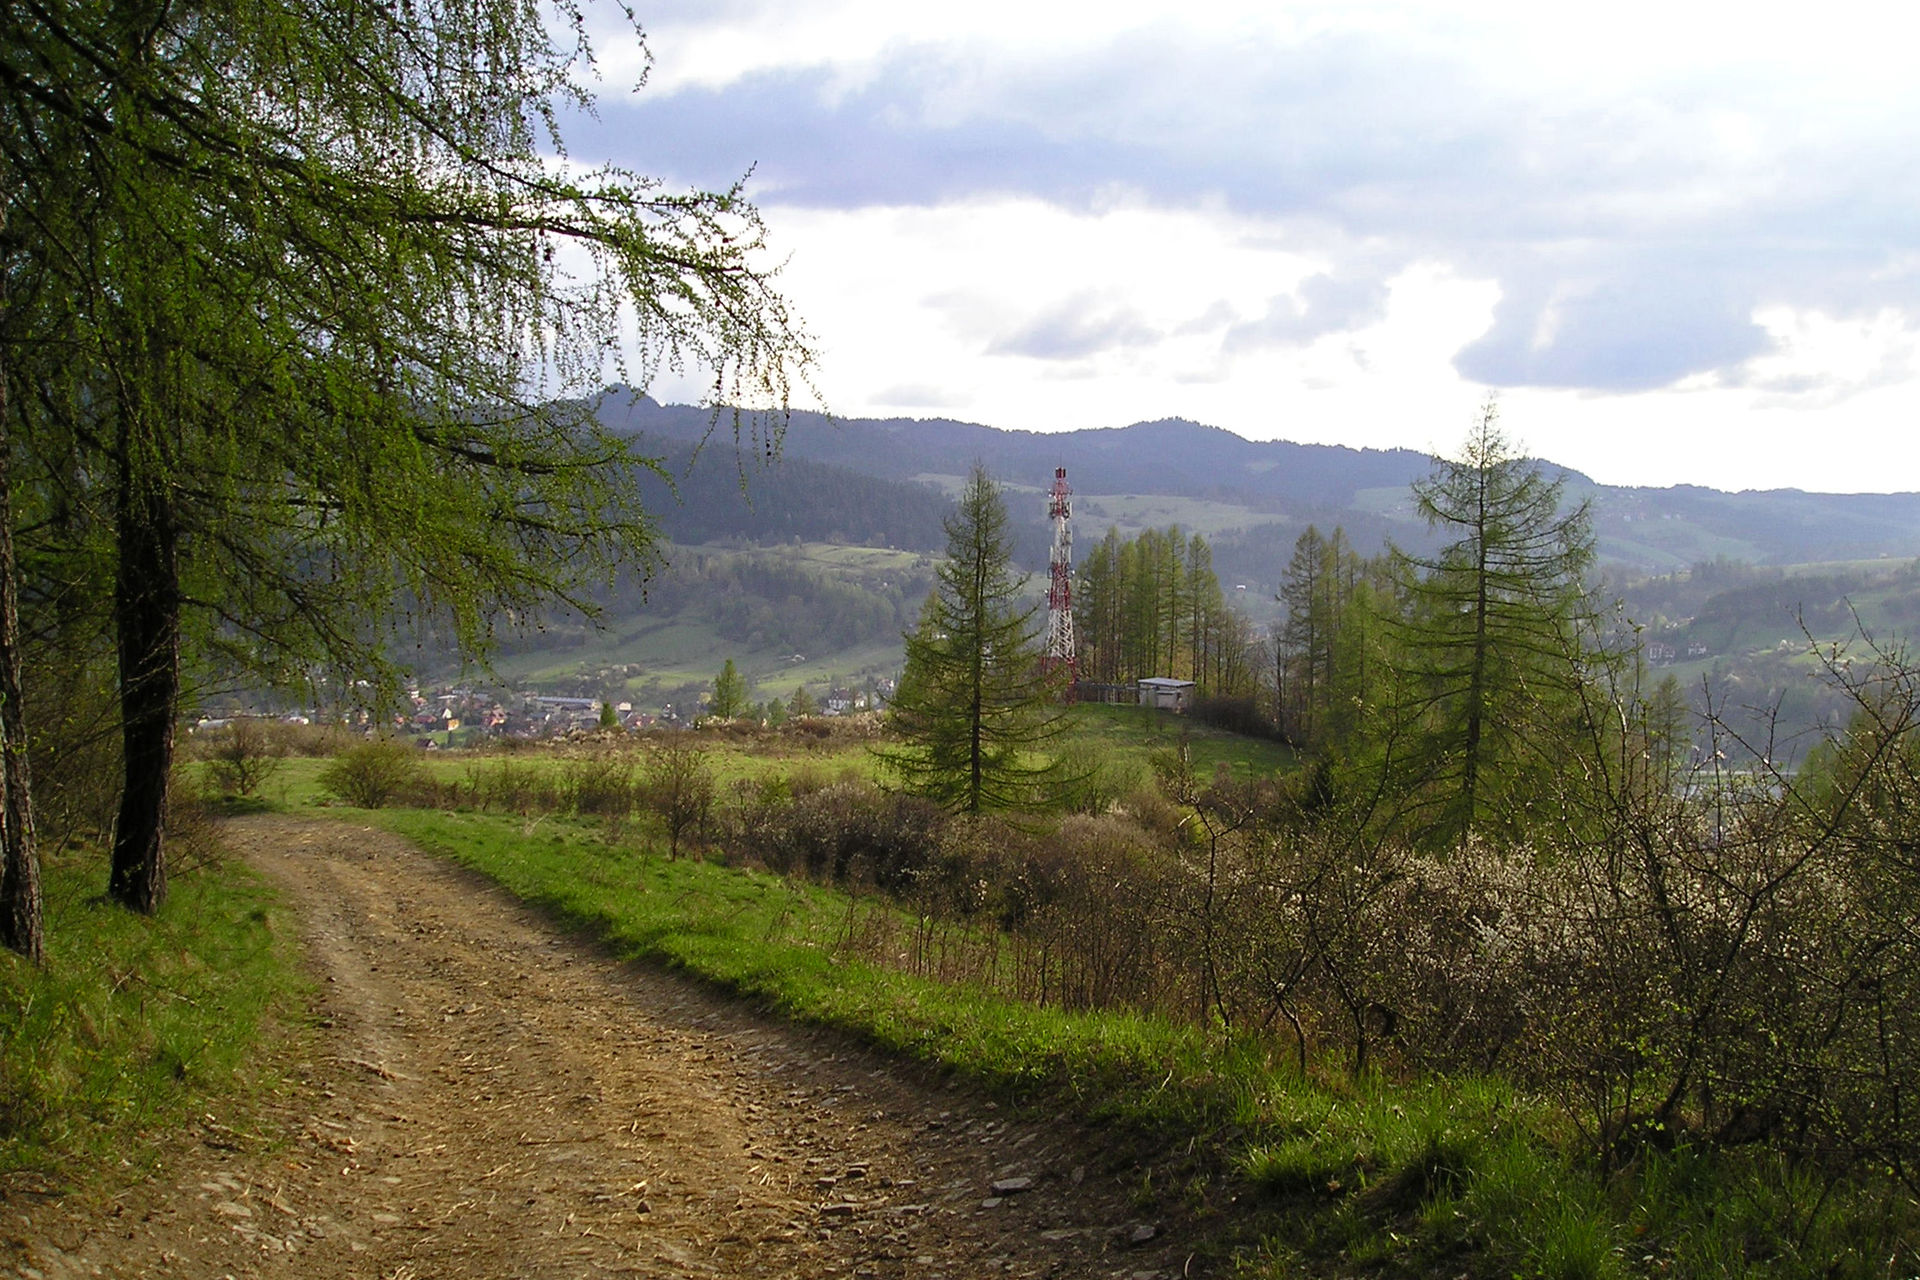 Widok w stronę Krościenka z terenów poniżej lasu